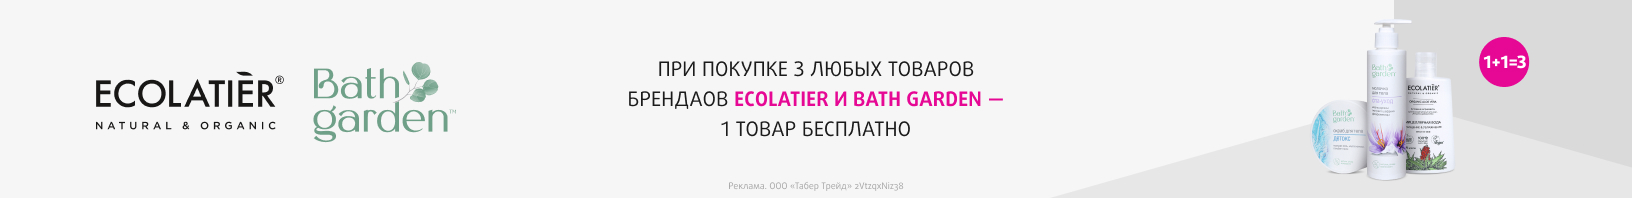 ECOLATIER, BATH GARDEN: 1+1=3